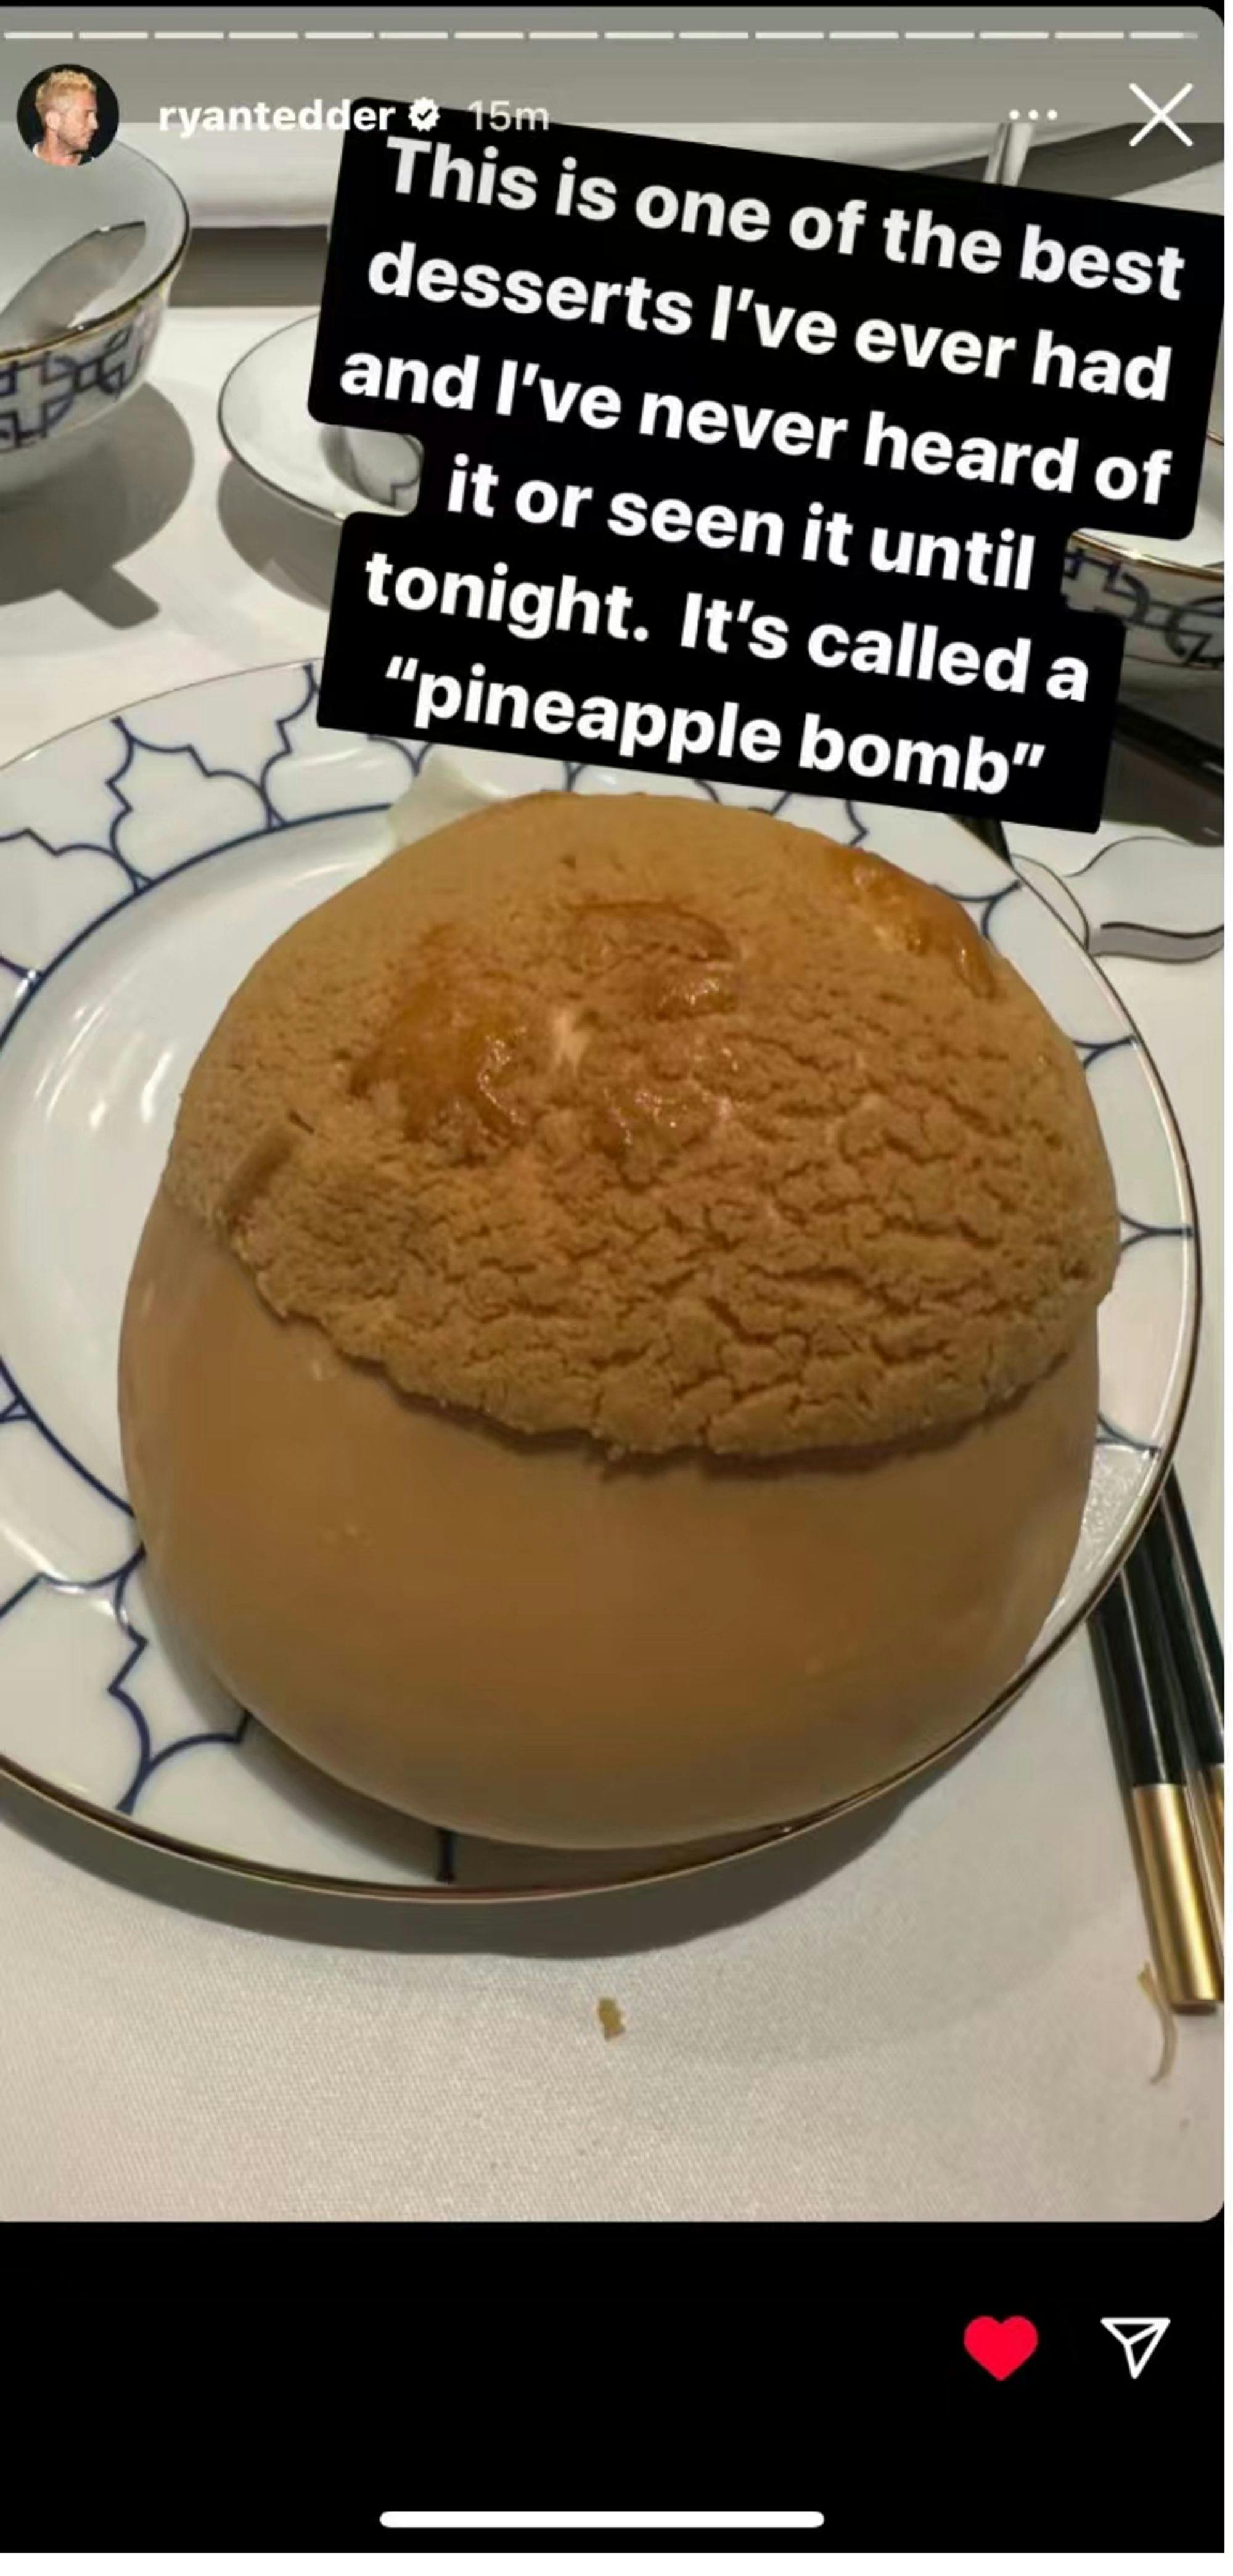 这个”菠萝炸弹“真的好好笑lol